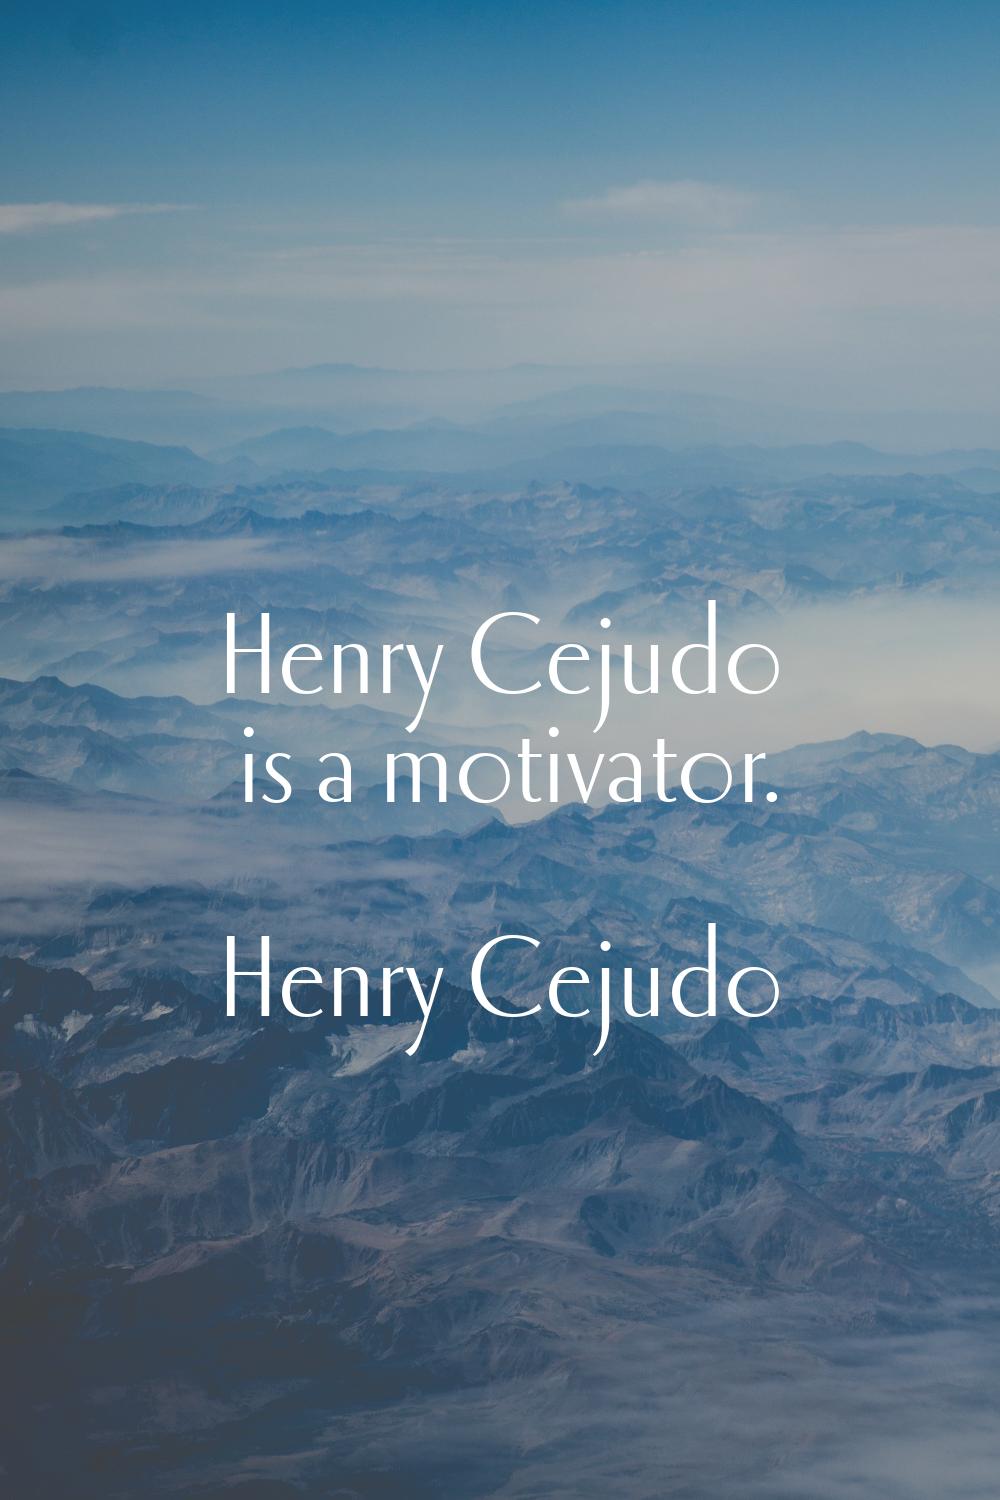 Henry Cejudo is a motivator.